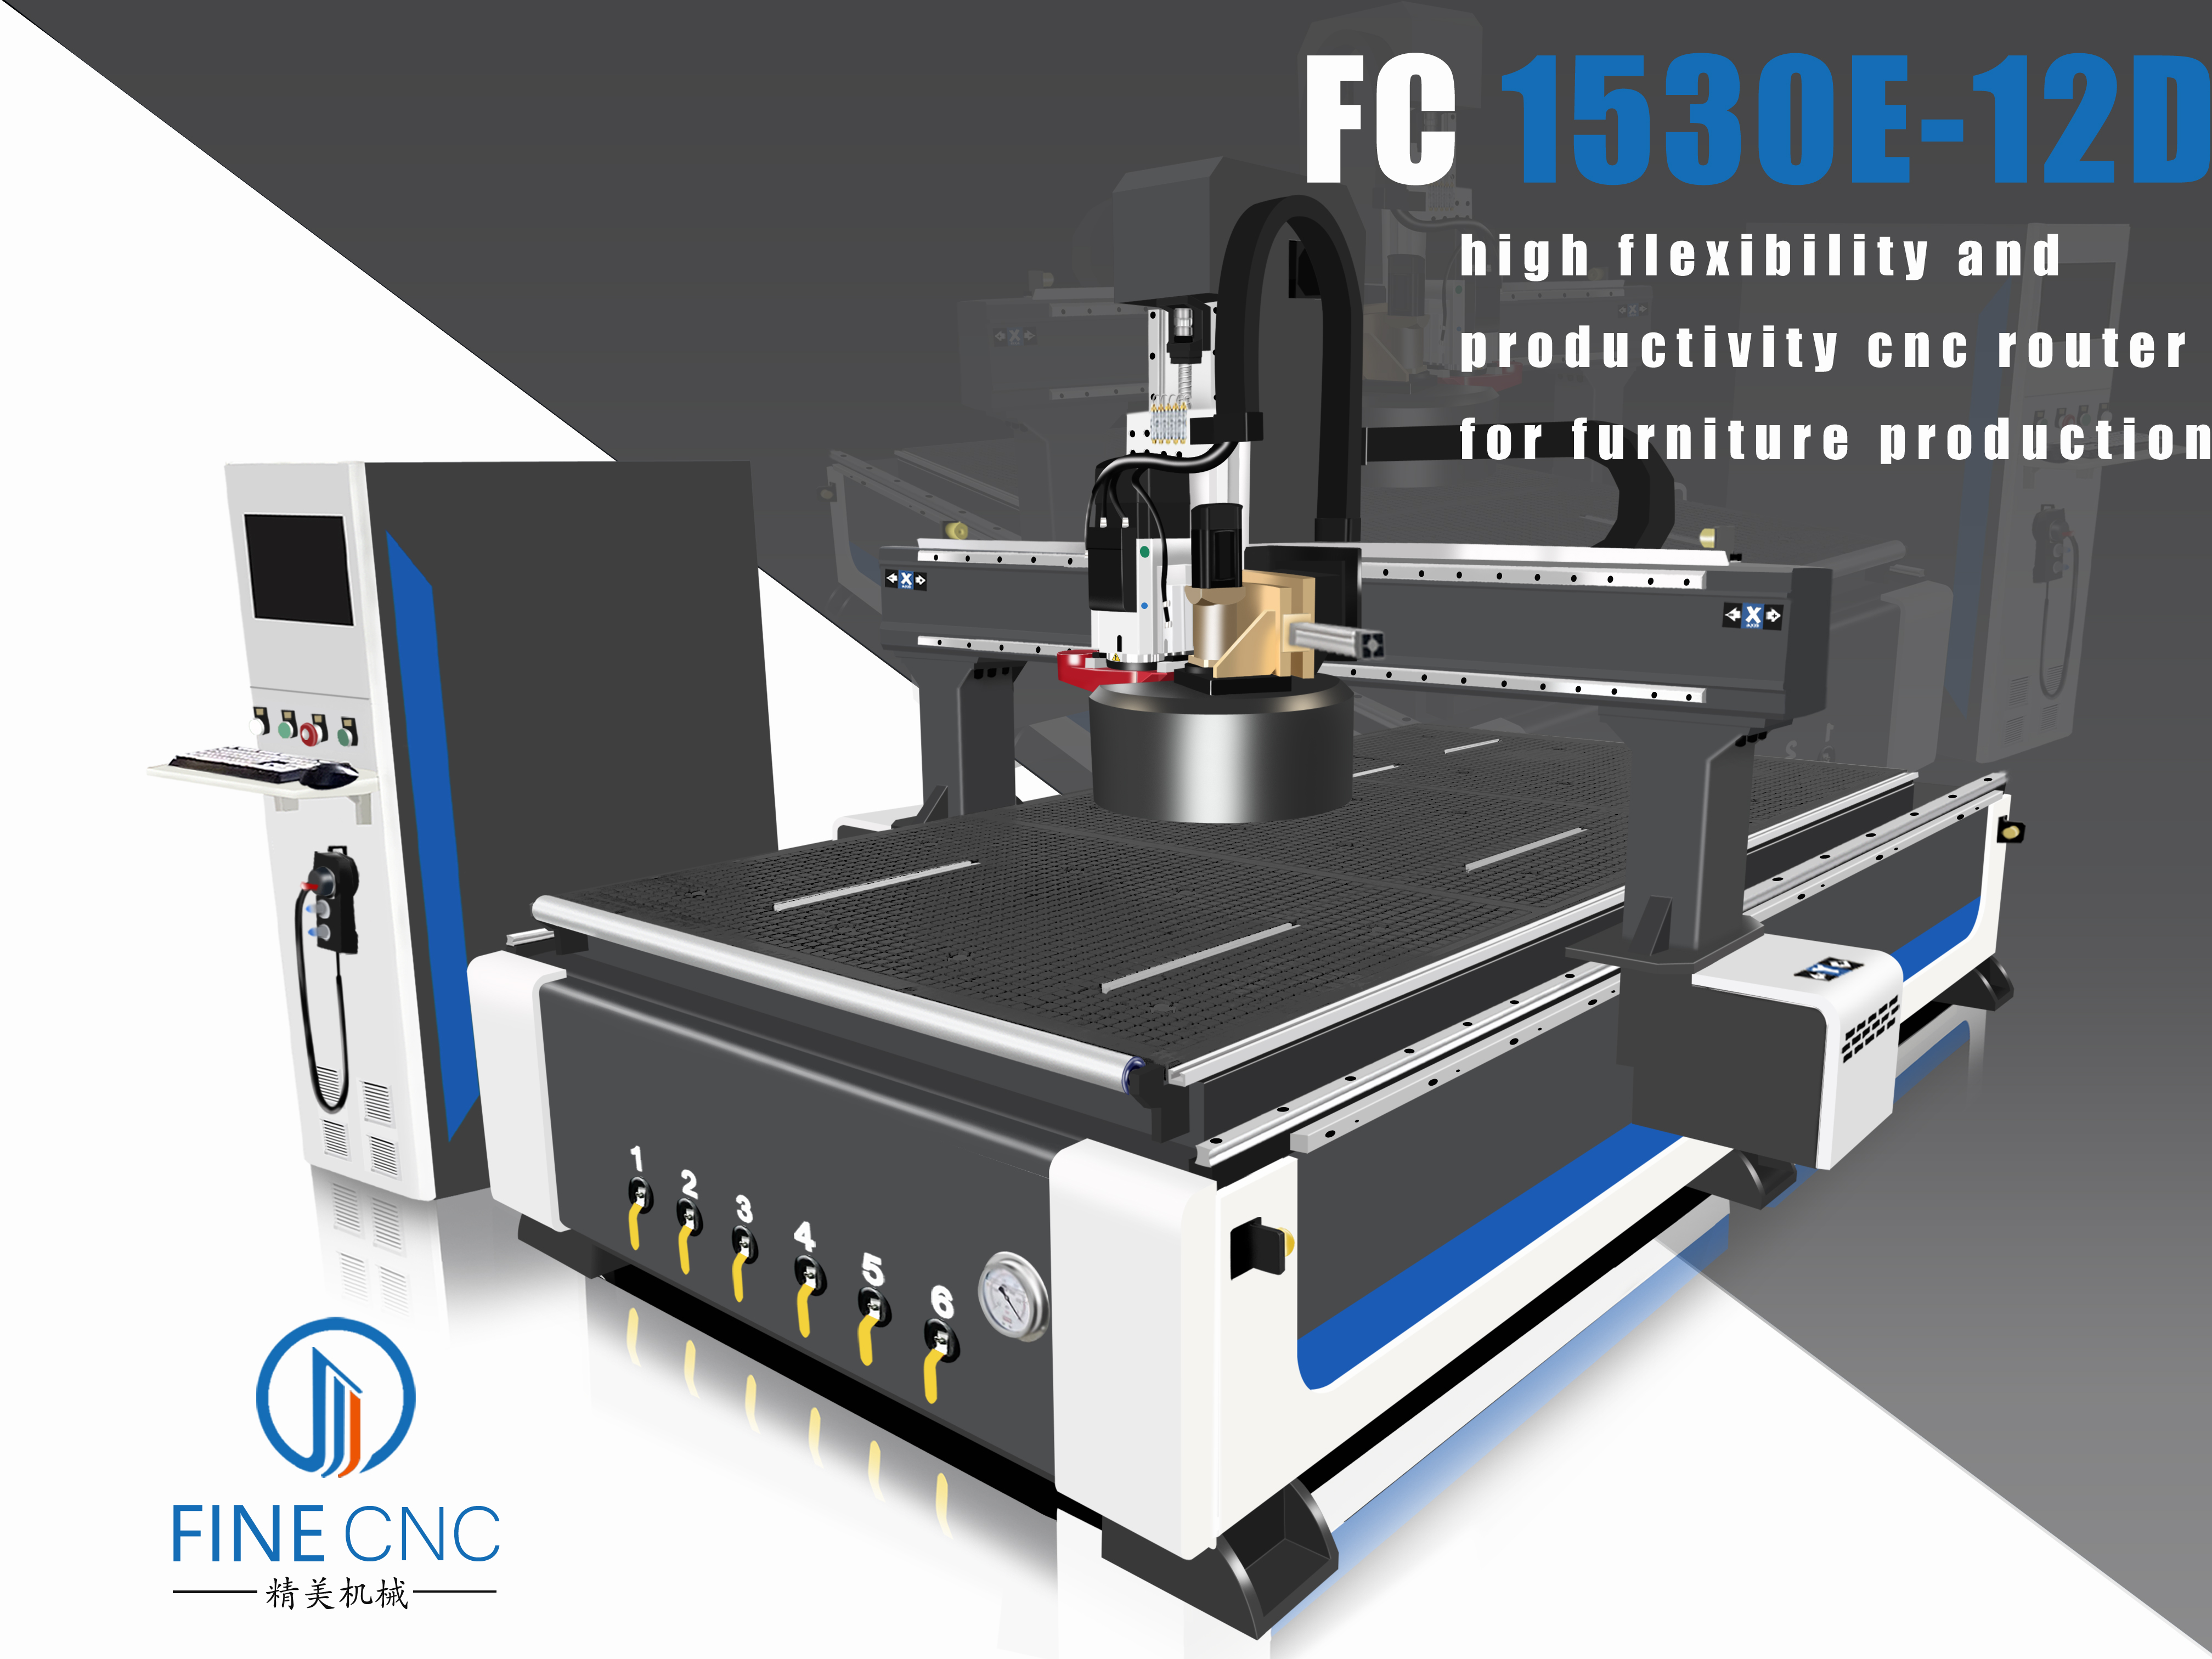 FC1530E-12D ATC CNC Router